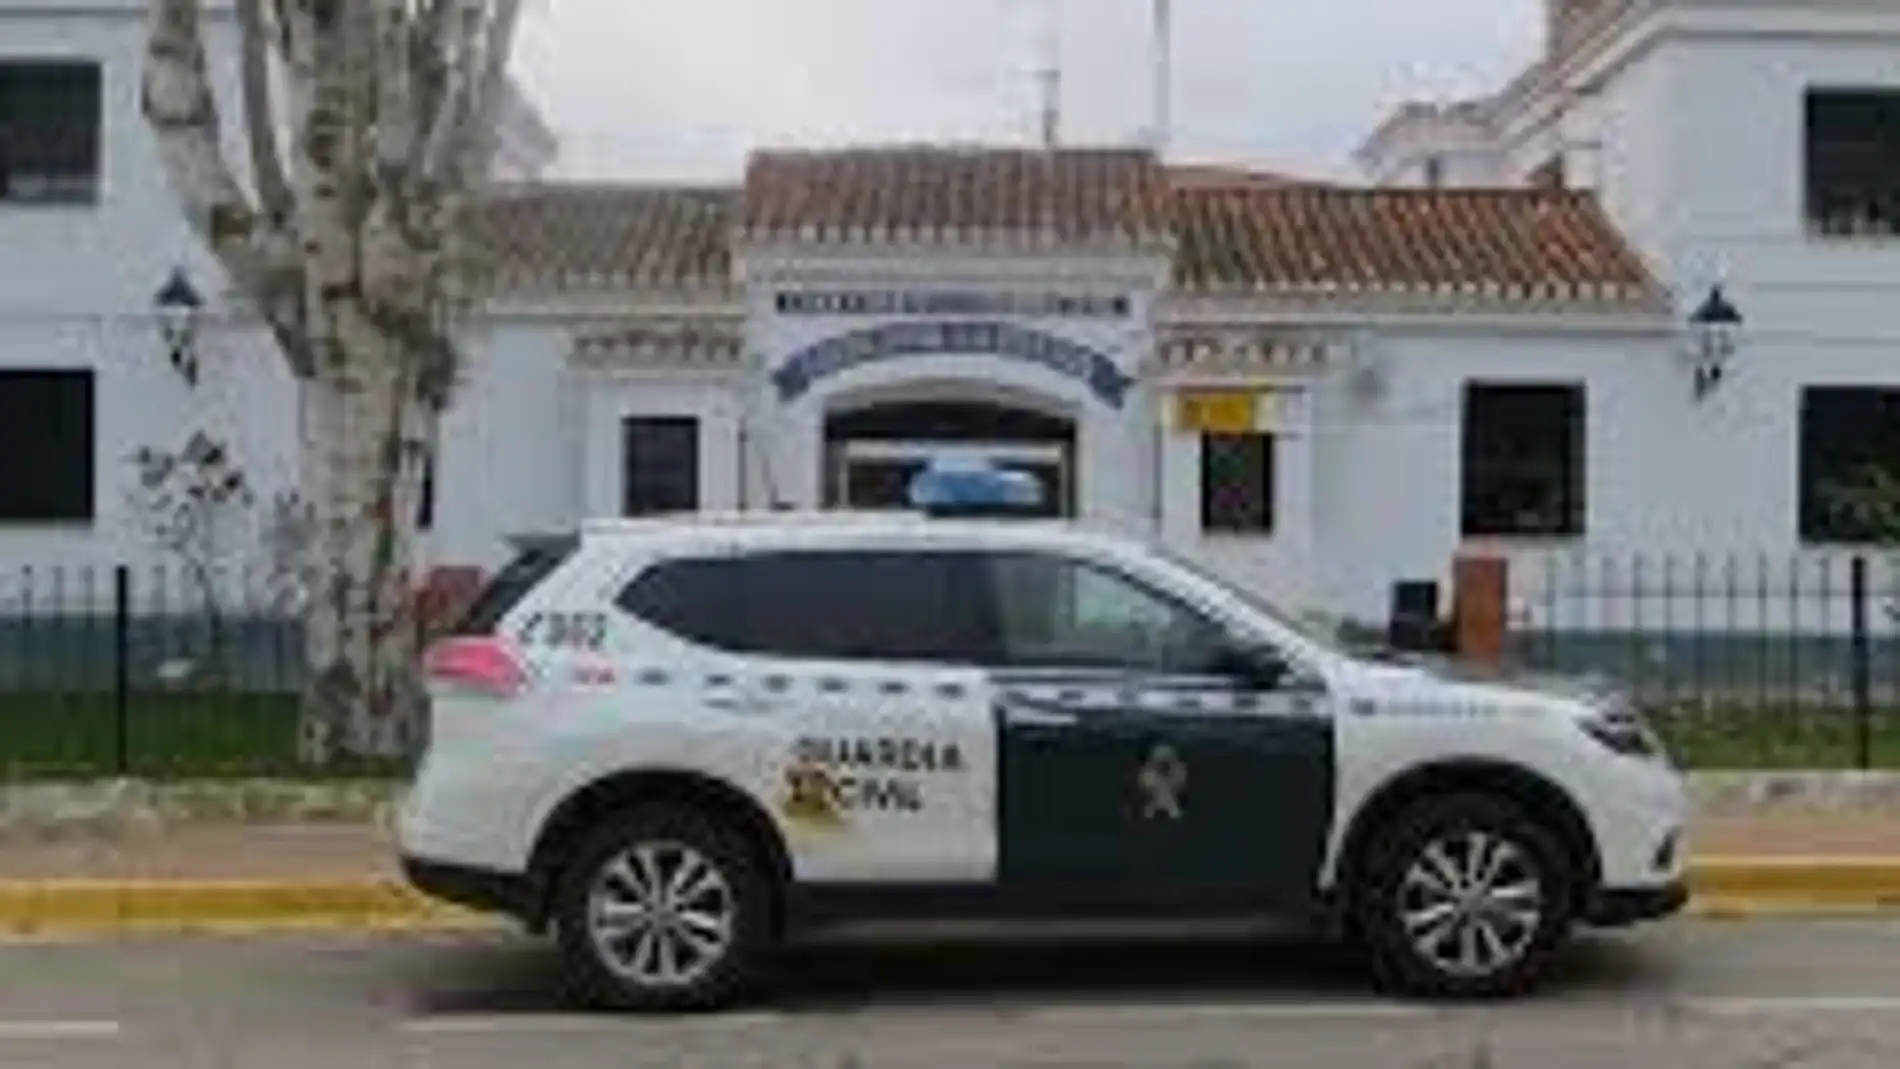 Confirman que el cadáver que apareció en una balsa de Villarrobledo es el de la mujer desaparecida en marzo